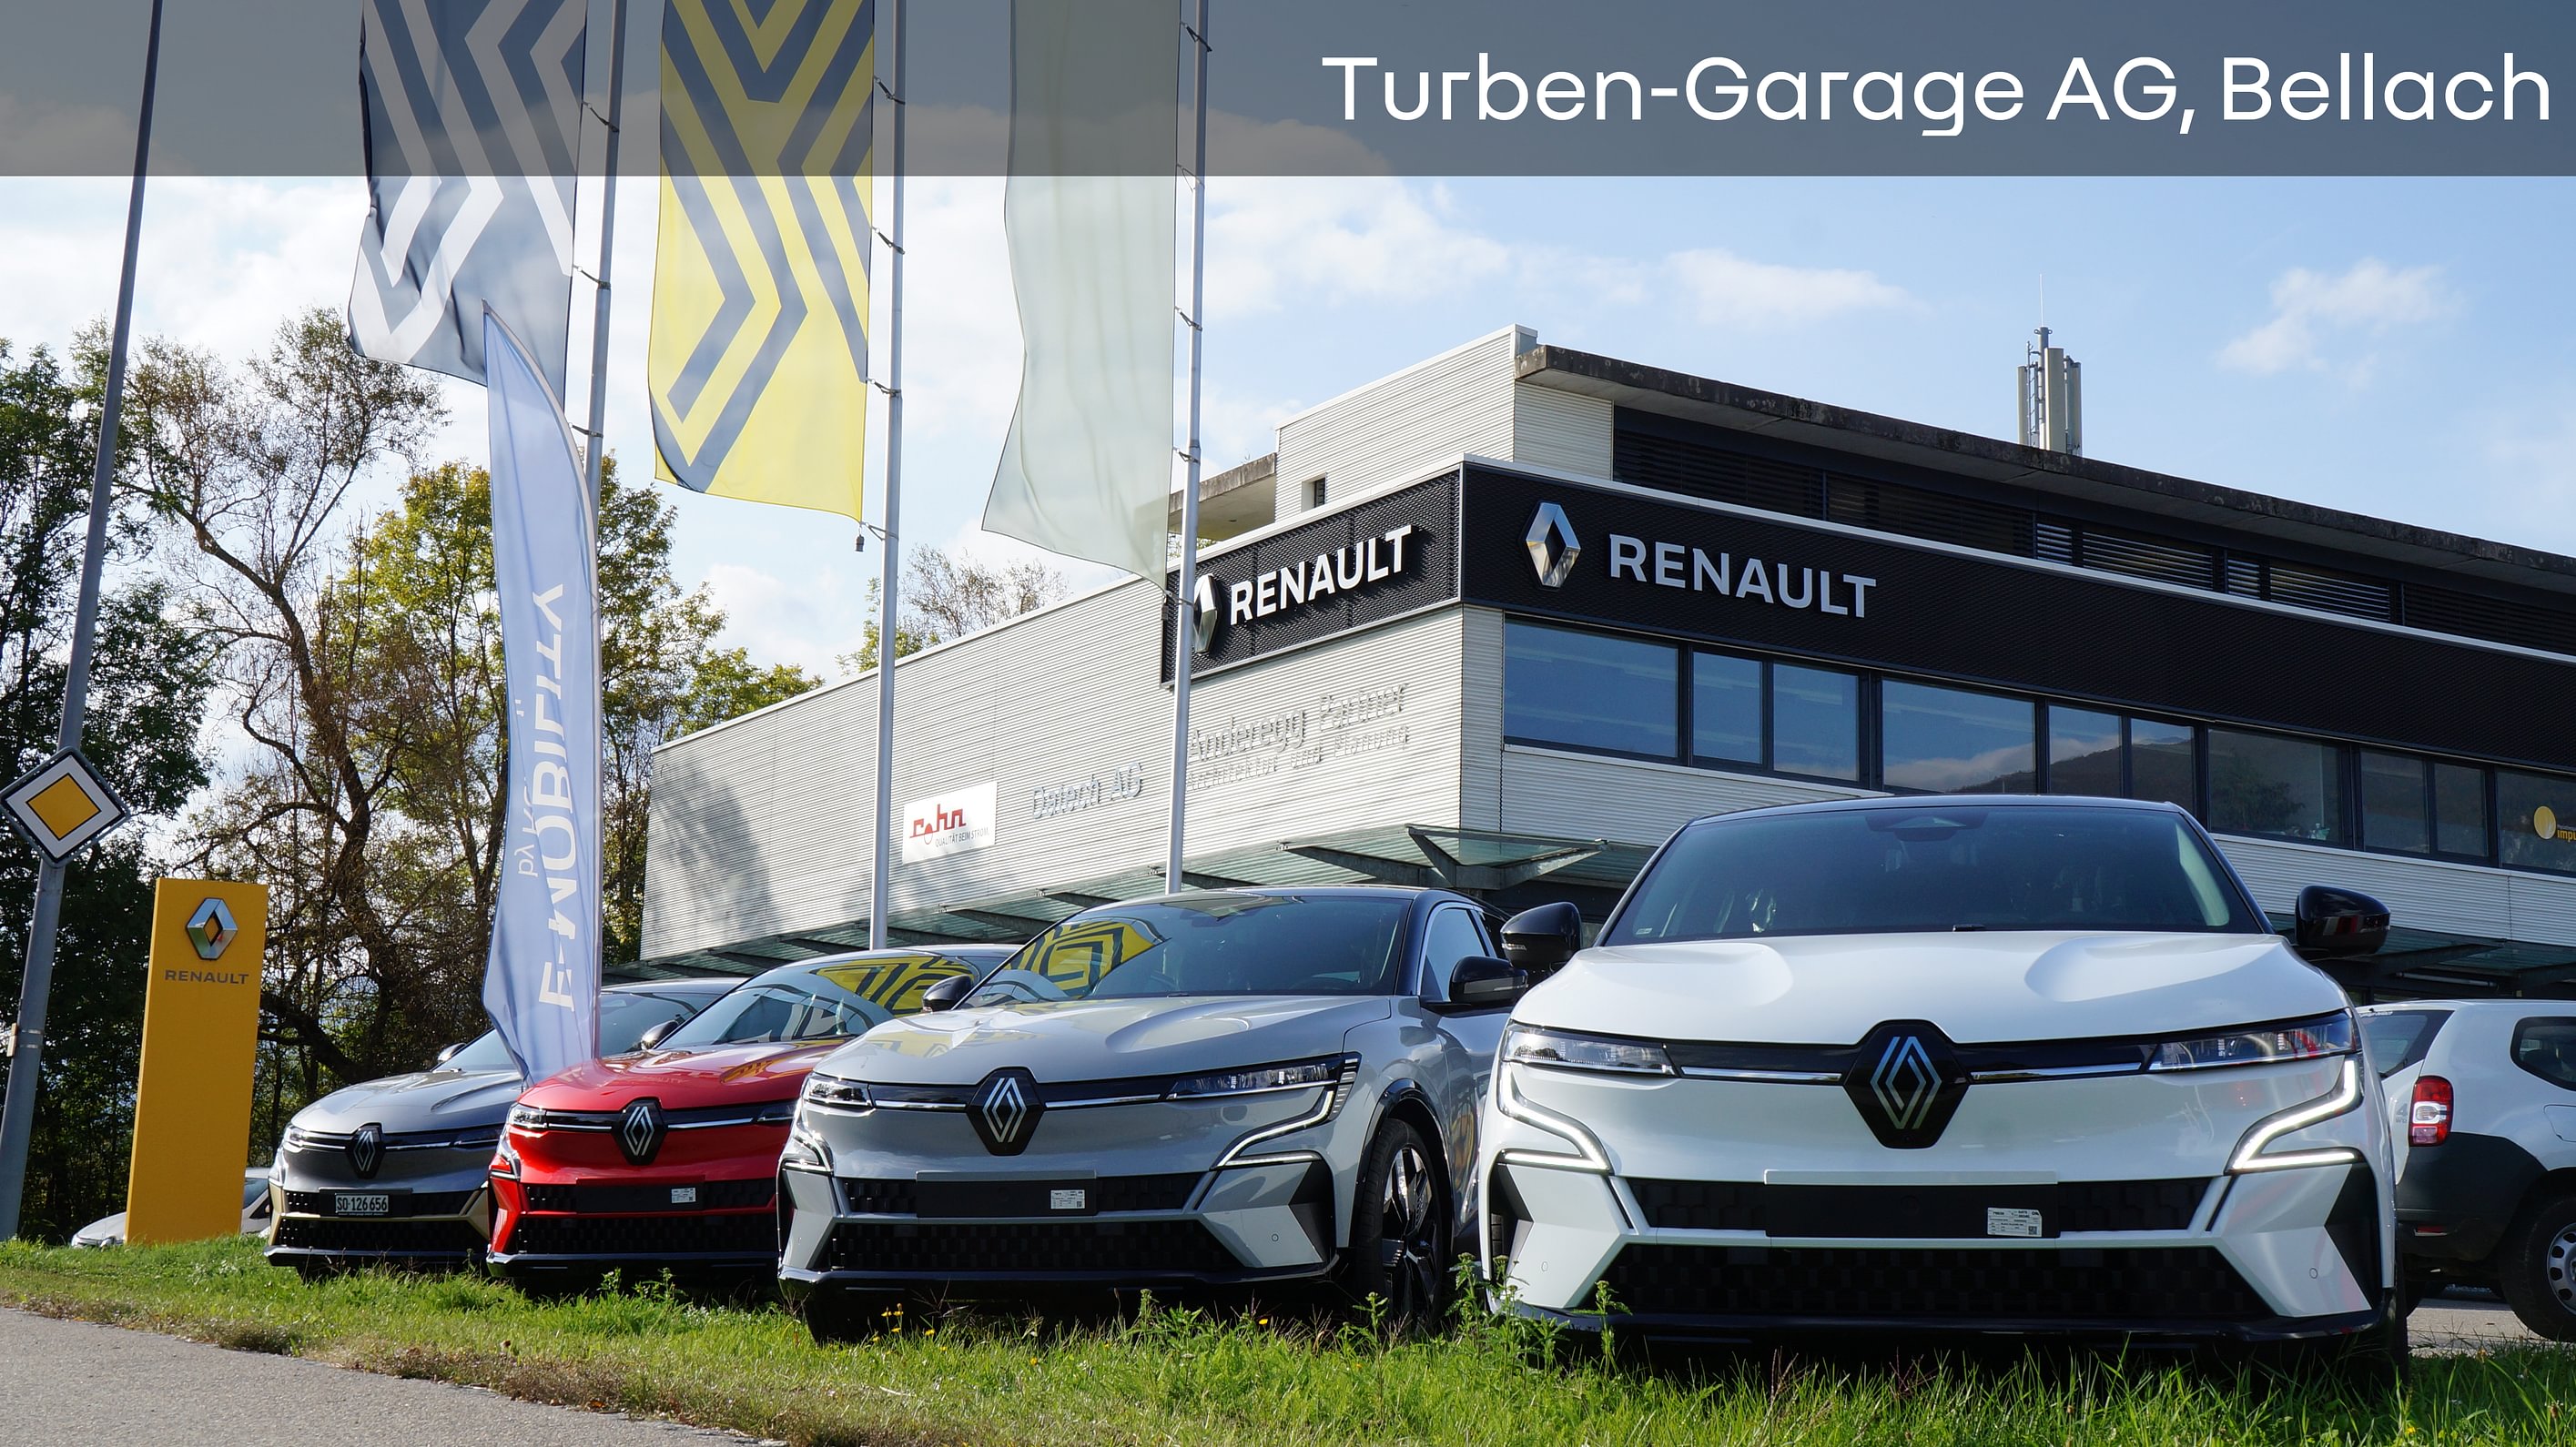 Bilder Turben-Garage AG Bellach